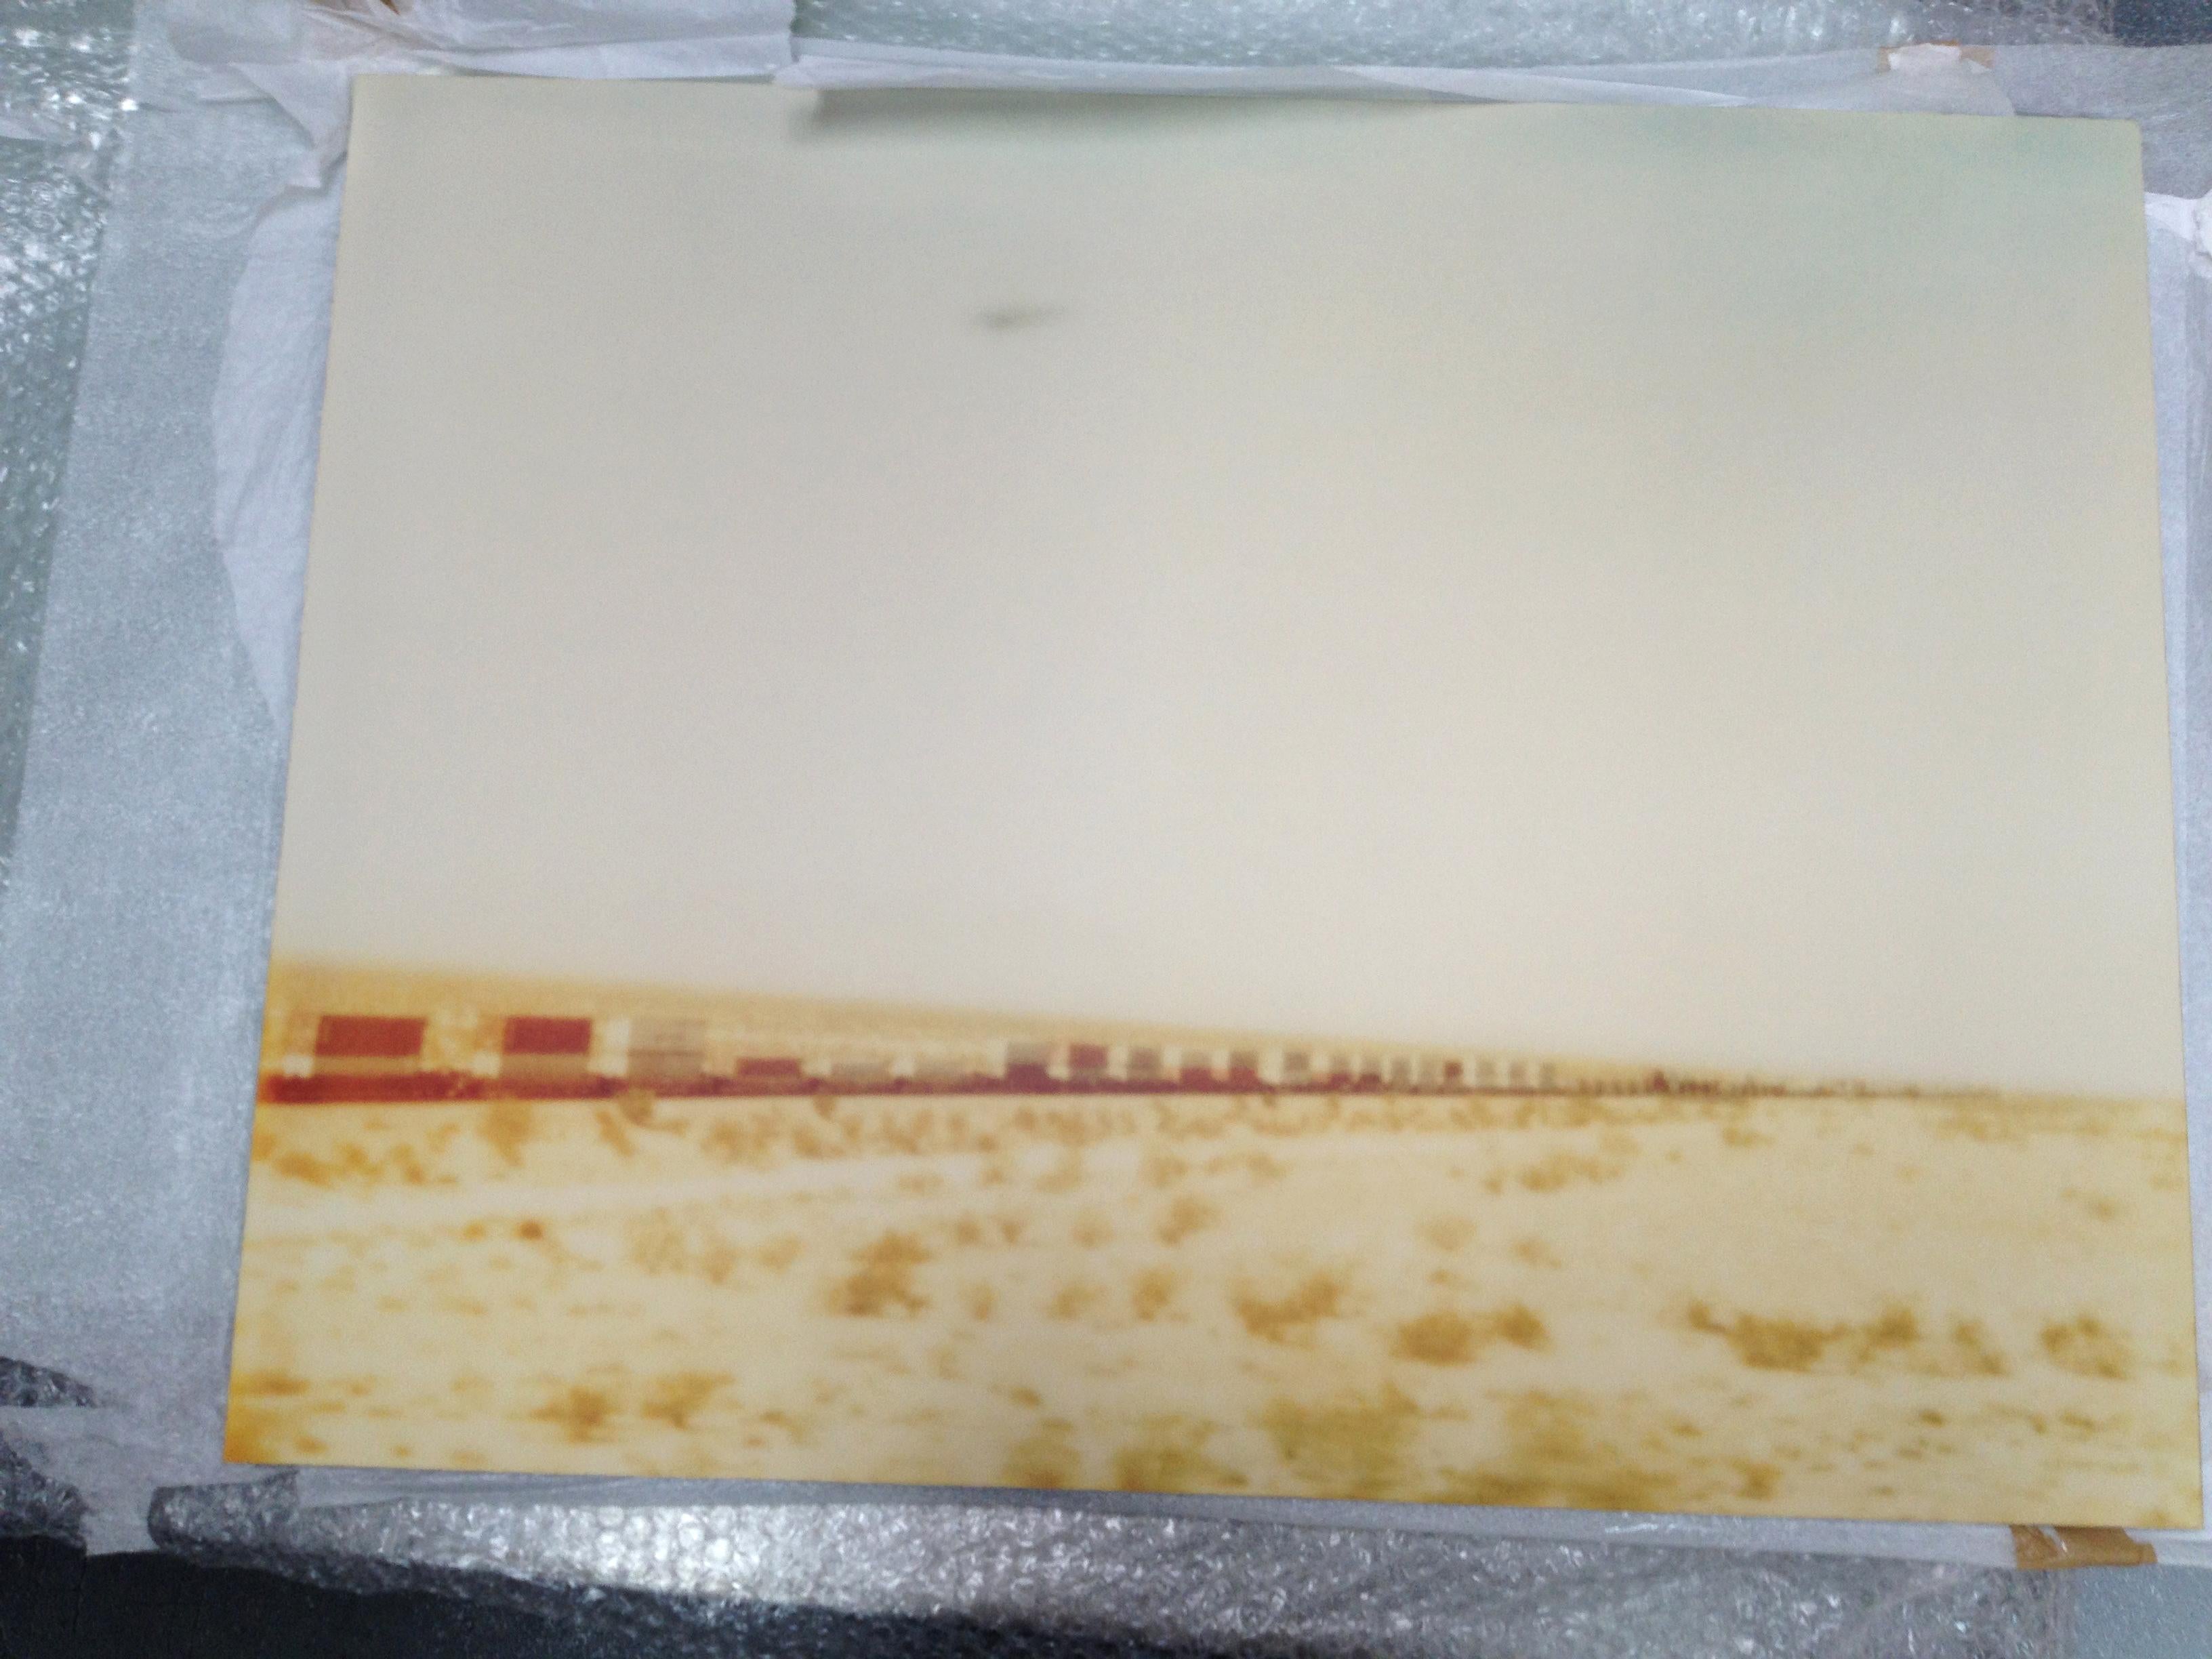 Croix de train Plain (Wastelands) - impression analogique à la main, montée - Polaroid, couleur - Photograph de Stefanie Schneider